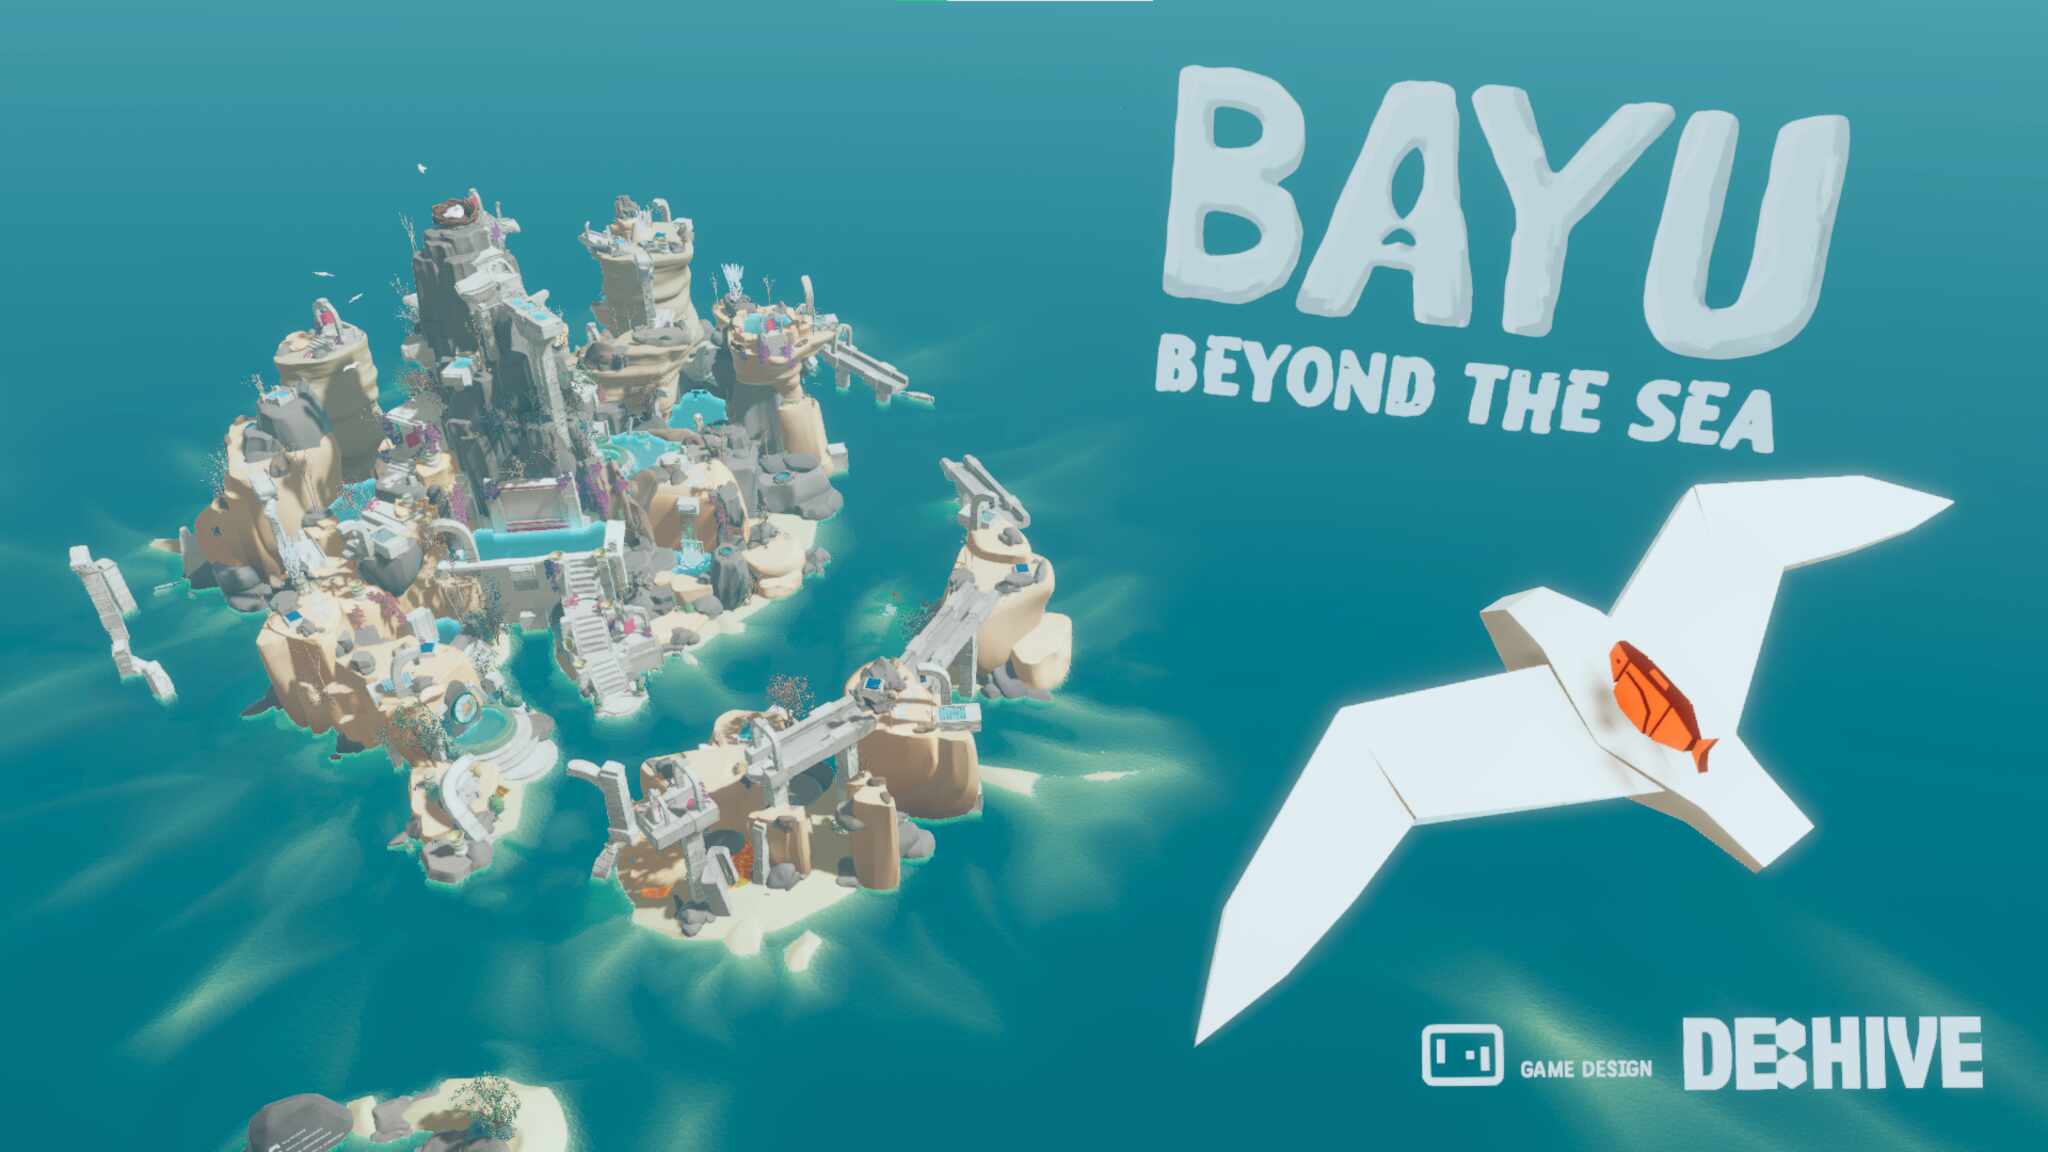 BAYU - Beyond the Sea